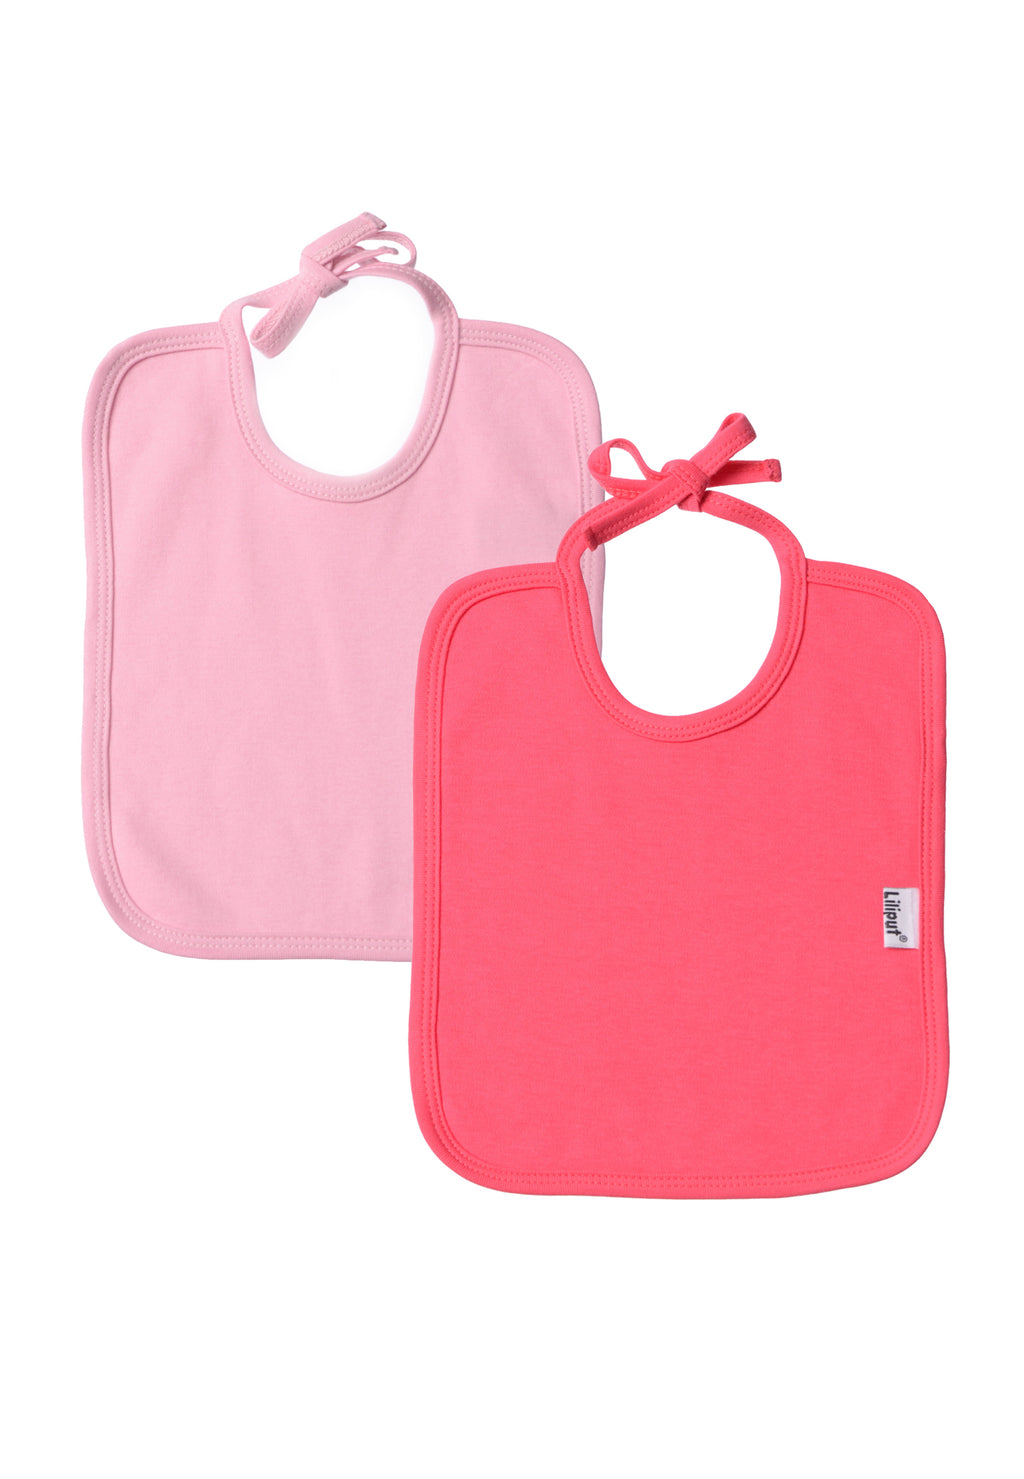 Doppelpack Bindelätzchen aus 100% Bio Baumwolle. In rosa und himbeere.